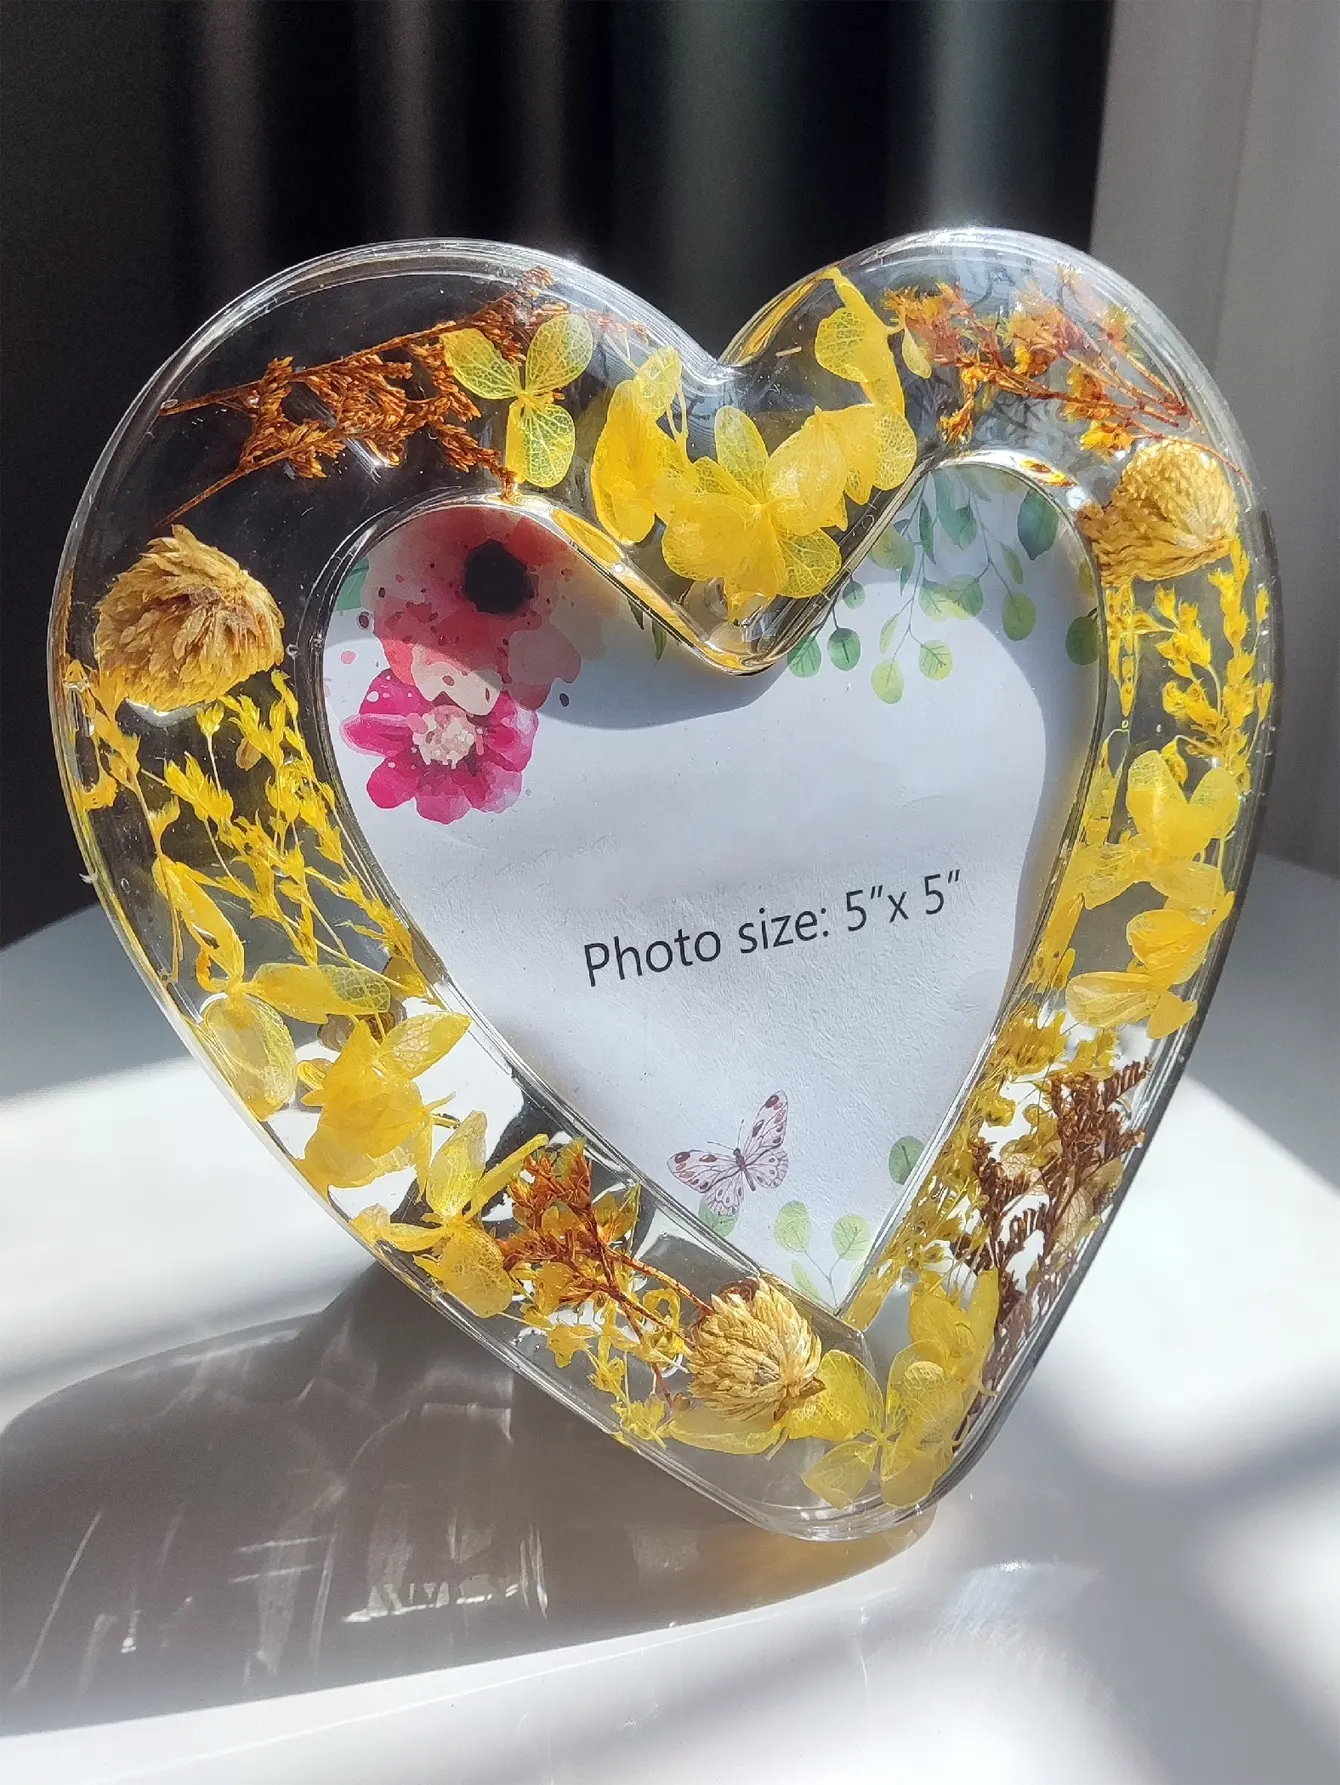 ऐक्रेलिक फोटो फ्रेम 5*5 इंच दिल के आकार का फोटो फ्रेम सूखे फूल क्रिस्टल आधुनिक शैली के साथ उच्च गुणवत्ता